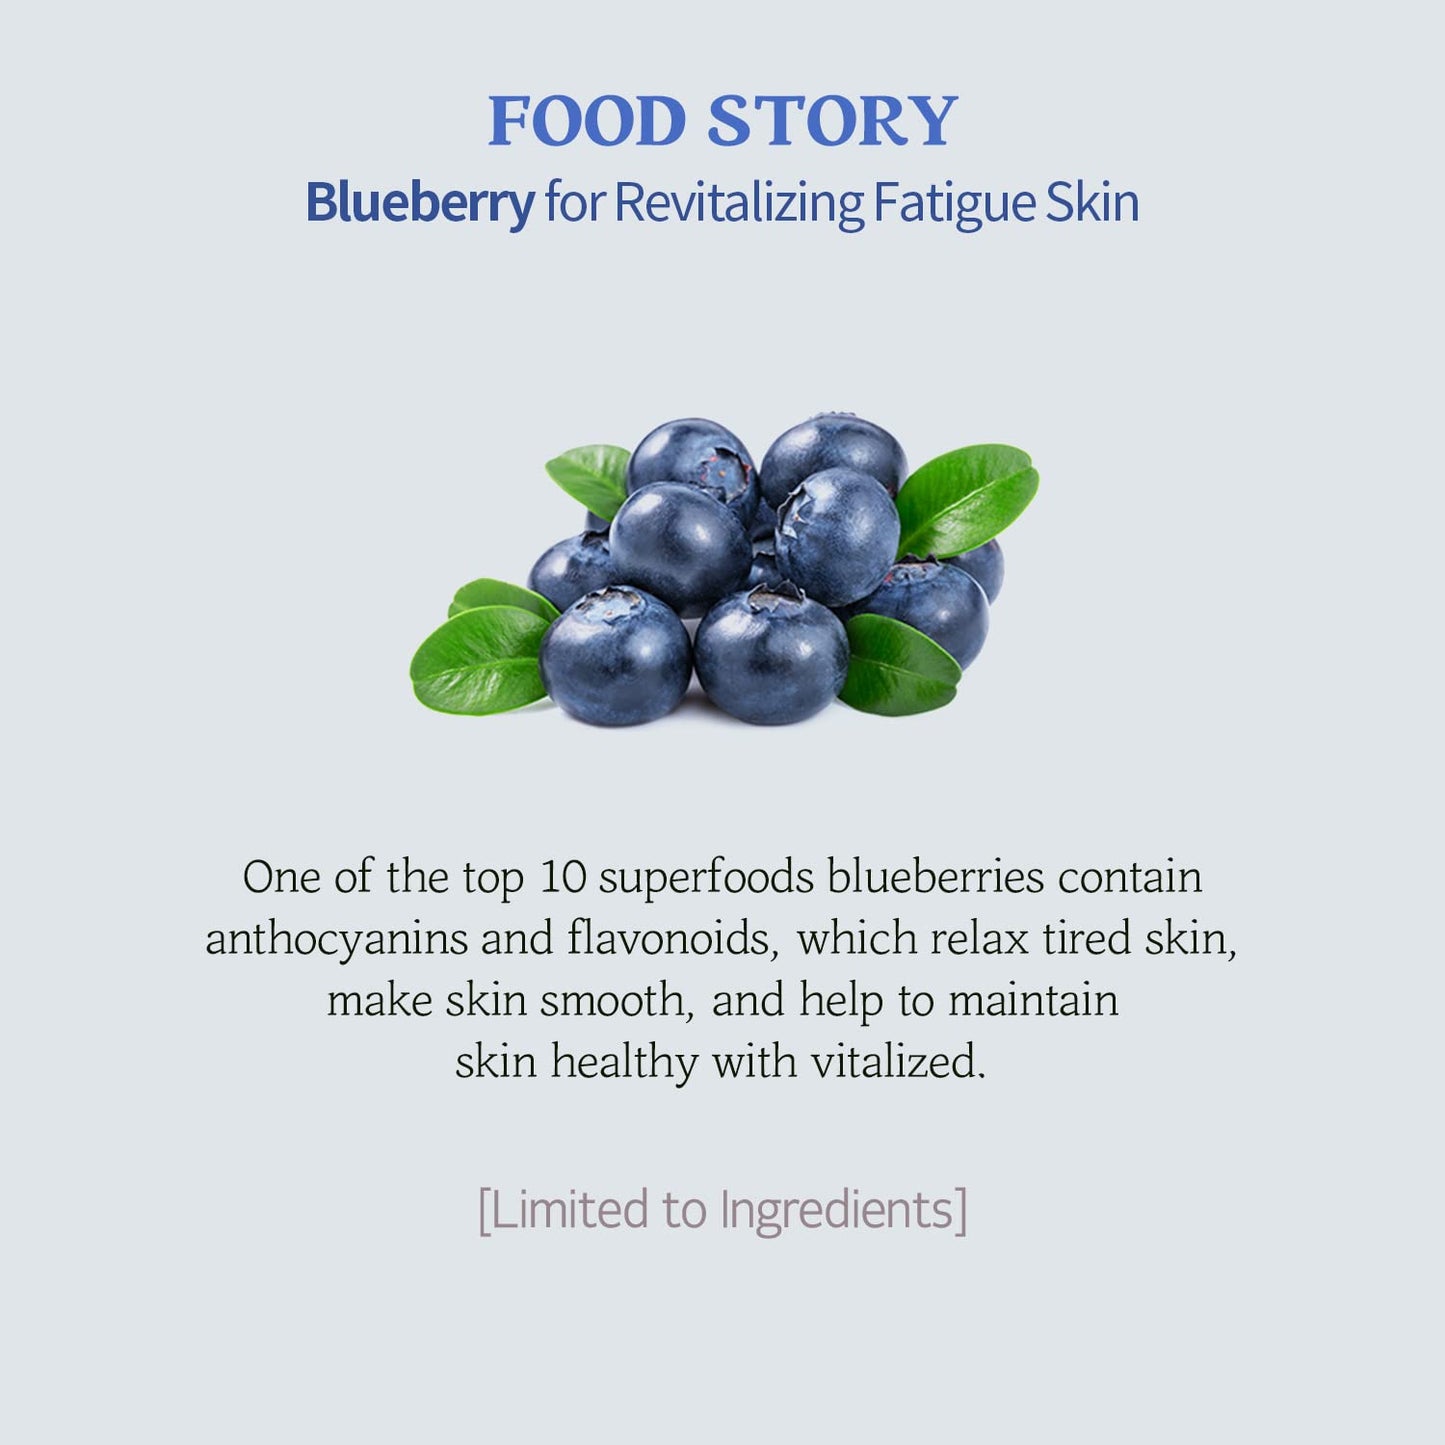 SKINFOOD Berry Moisturizing Sunscreen SPF 50+ PA++++